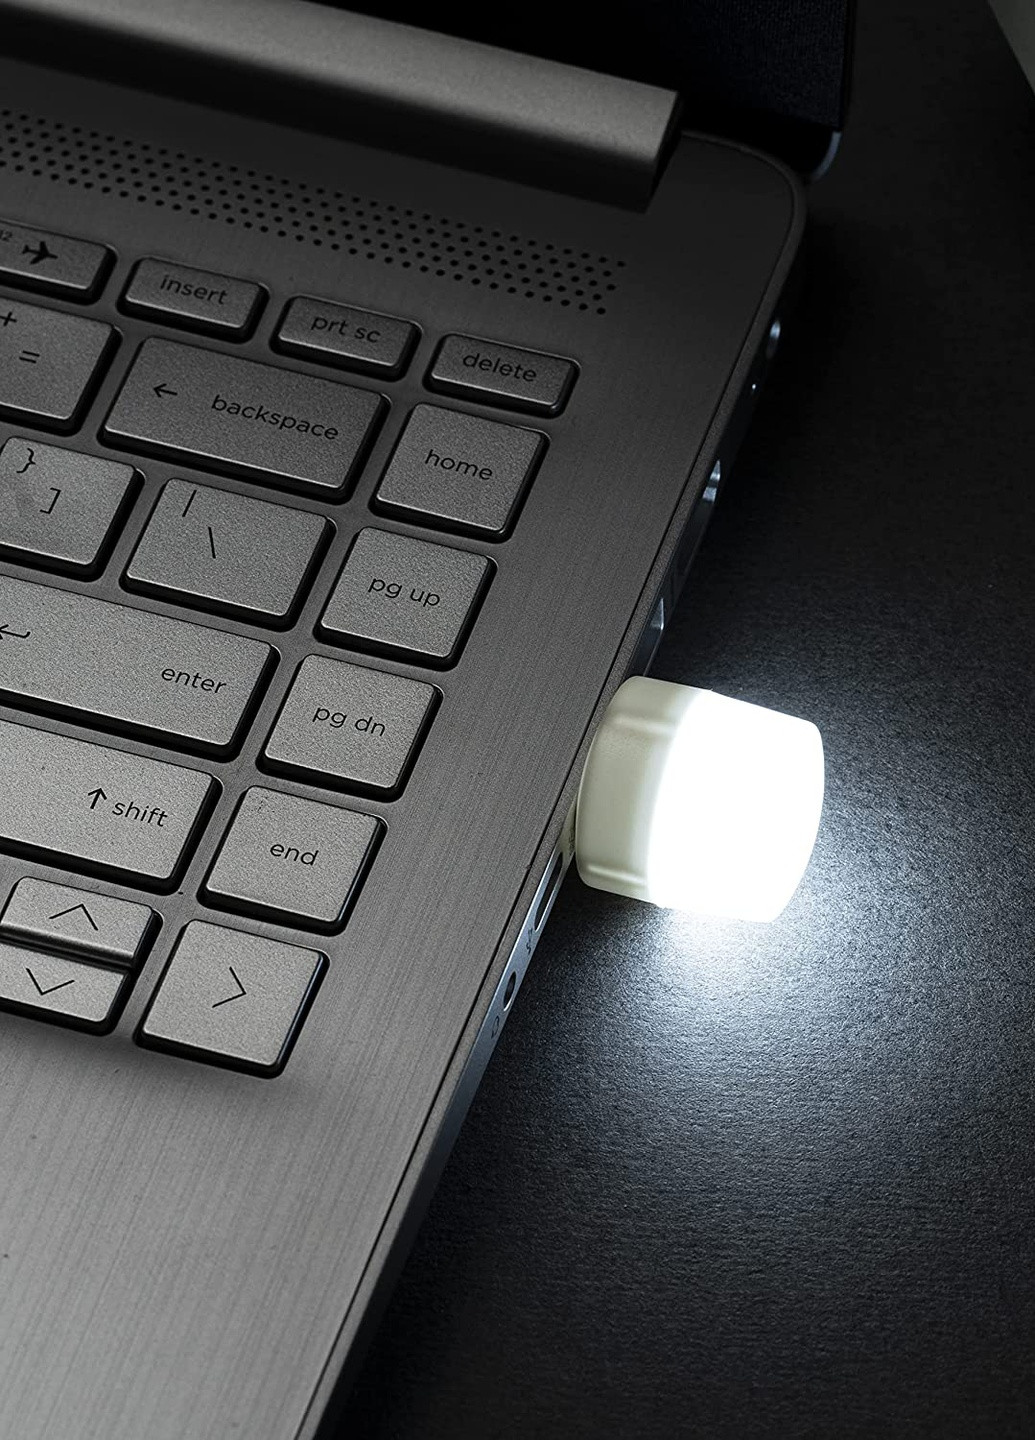 USB LED Лампочка 1W / 5В, Портативная светодиодная Мини USB лампа для павербанка Martec (256900205)